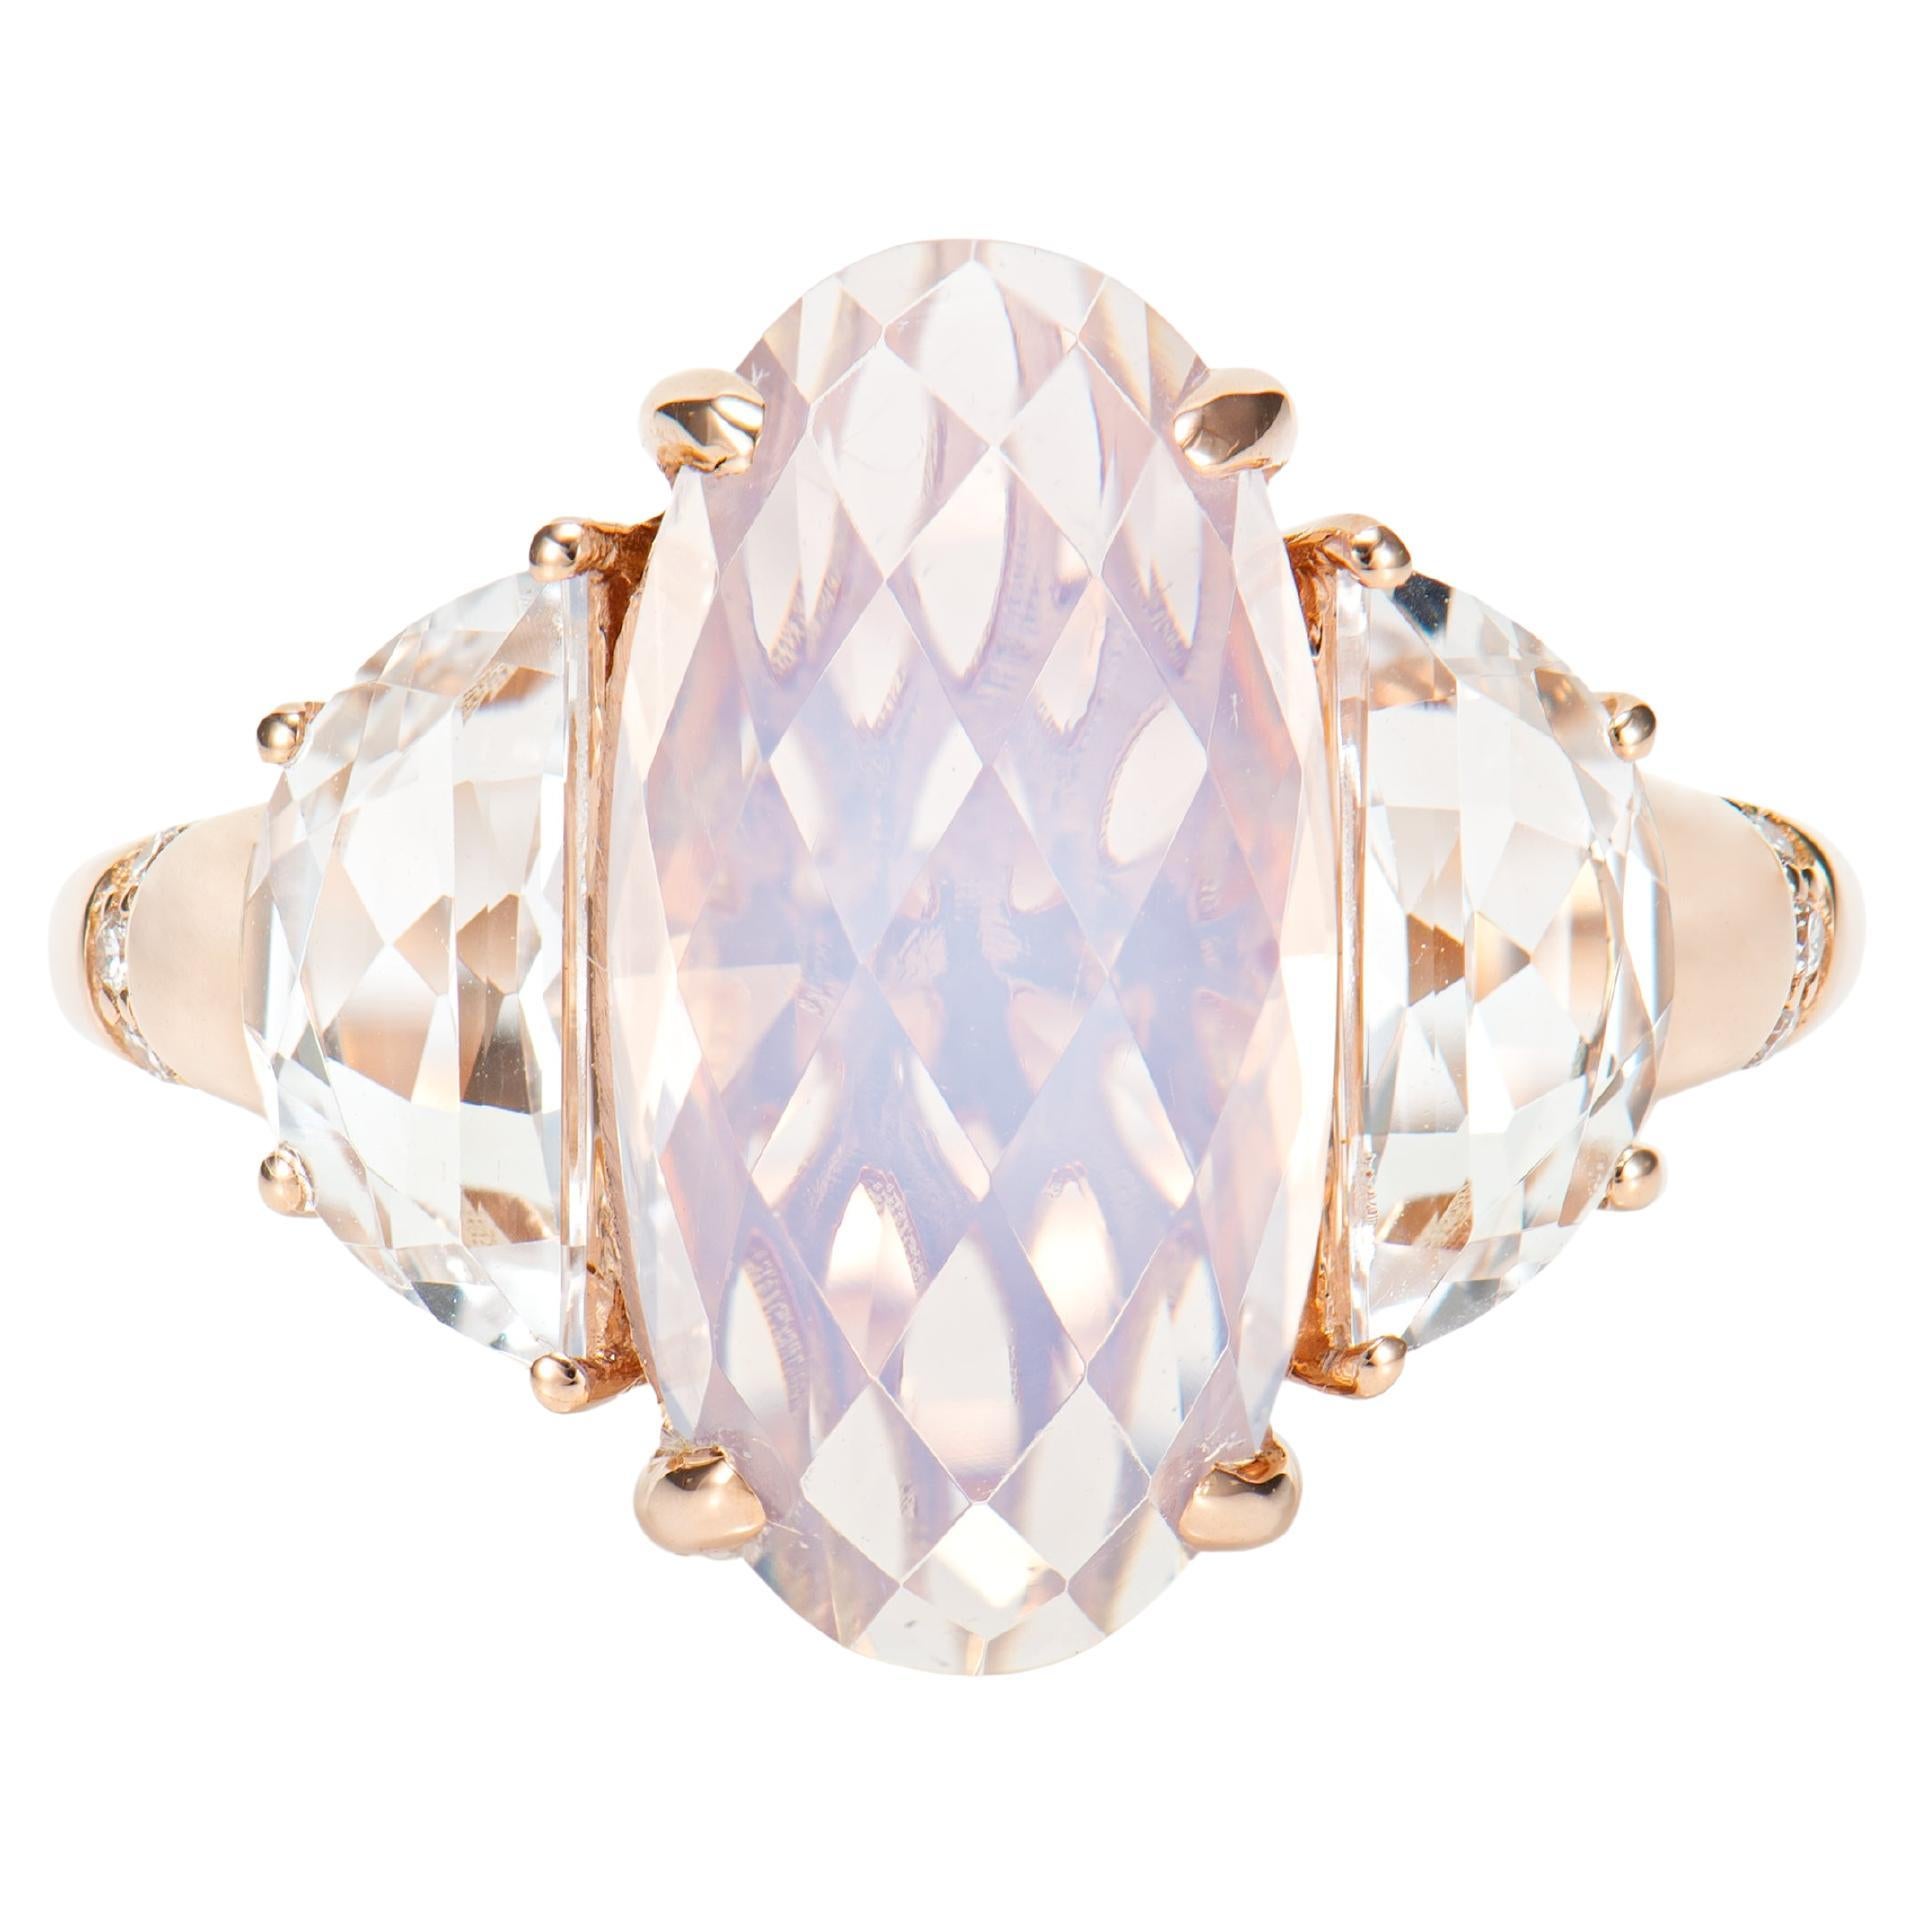 Antiker Ring aus 5,29 Karat lavendelfarbenem Quarz in 18KRG mit weißem Topas und Diamant.